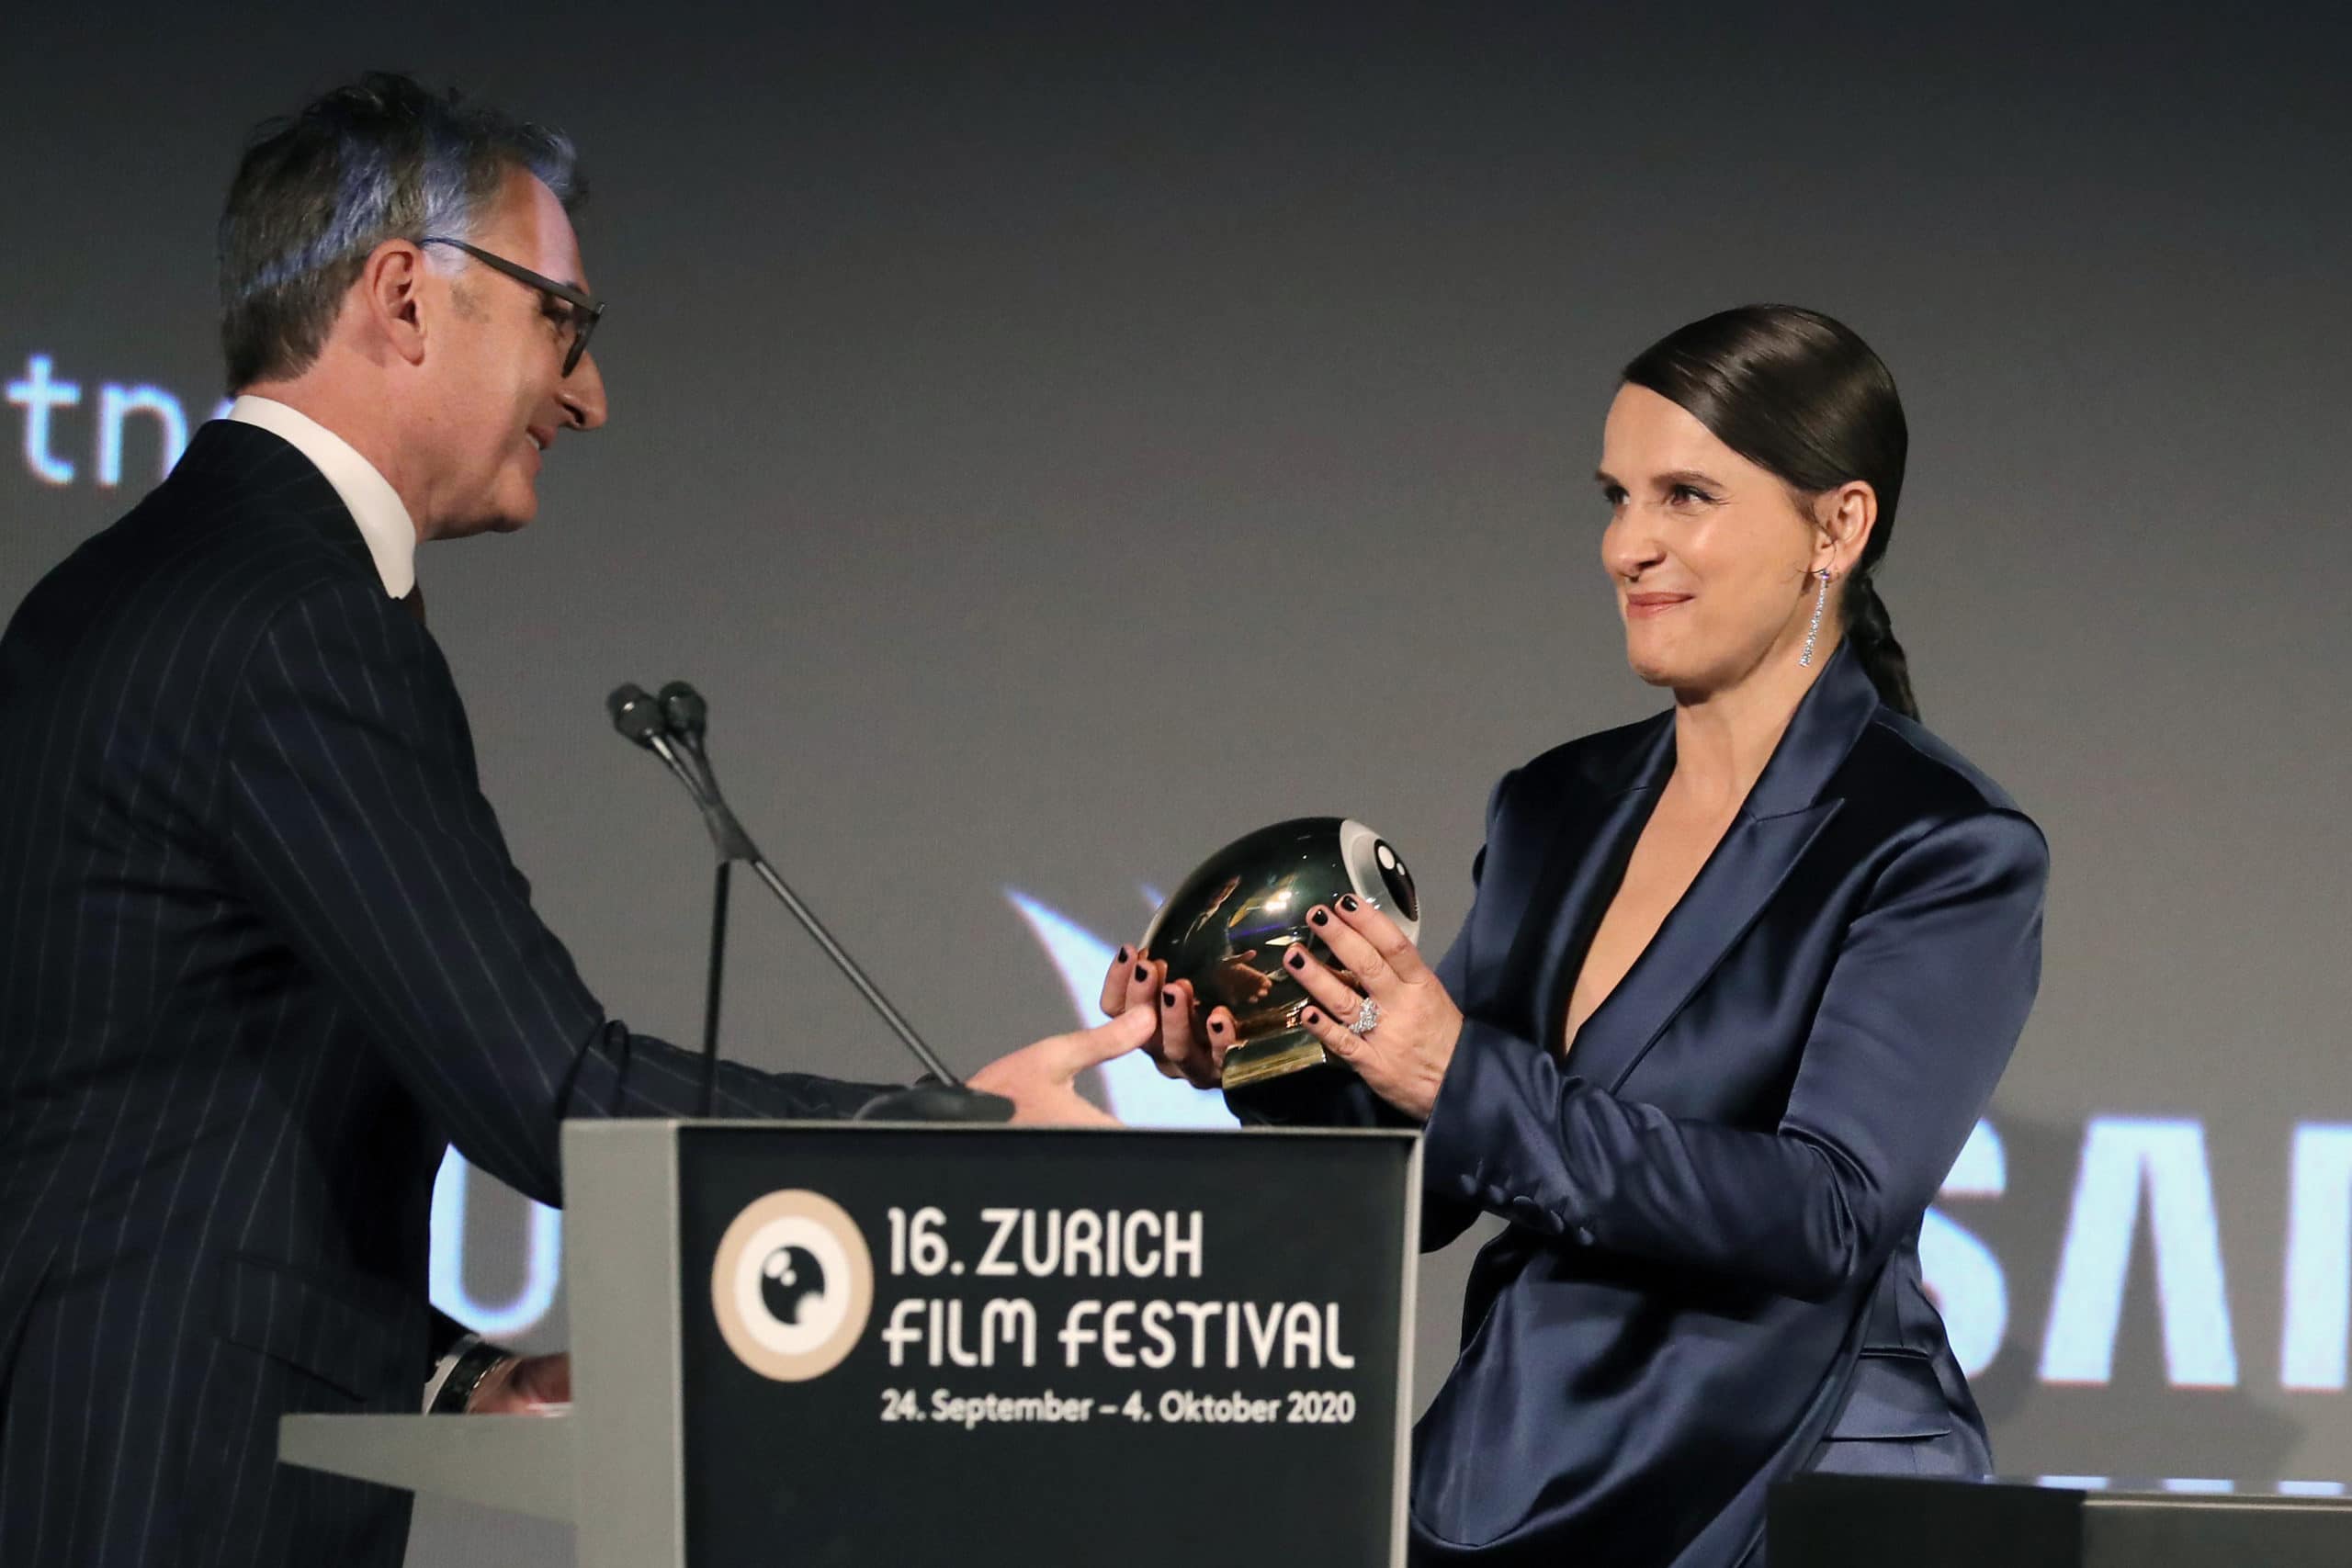 Христиан Юнген вручает французской актрисе Жюльет Бинош «Золотой глаз» (Golden Icon Award). 30.09.2020 г. (©Andreas Rentz/Getty Images for Zurich Film Festival)